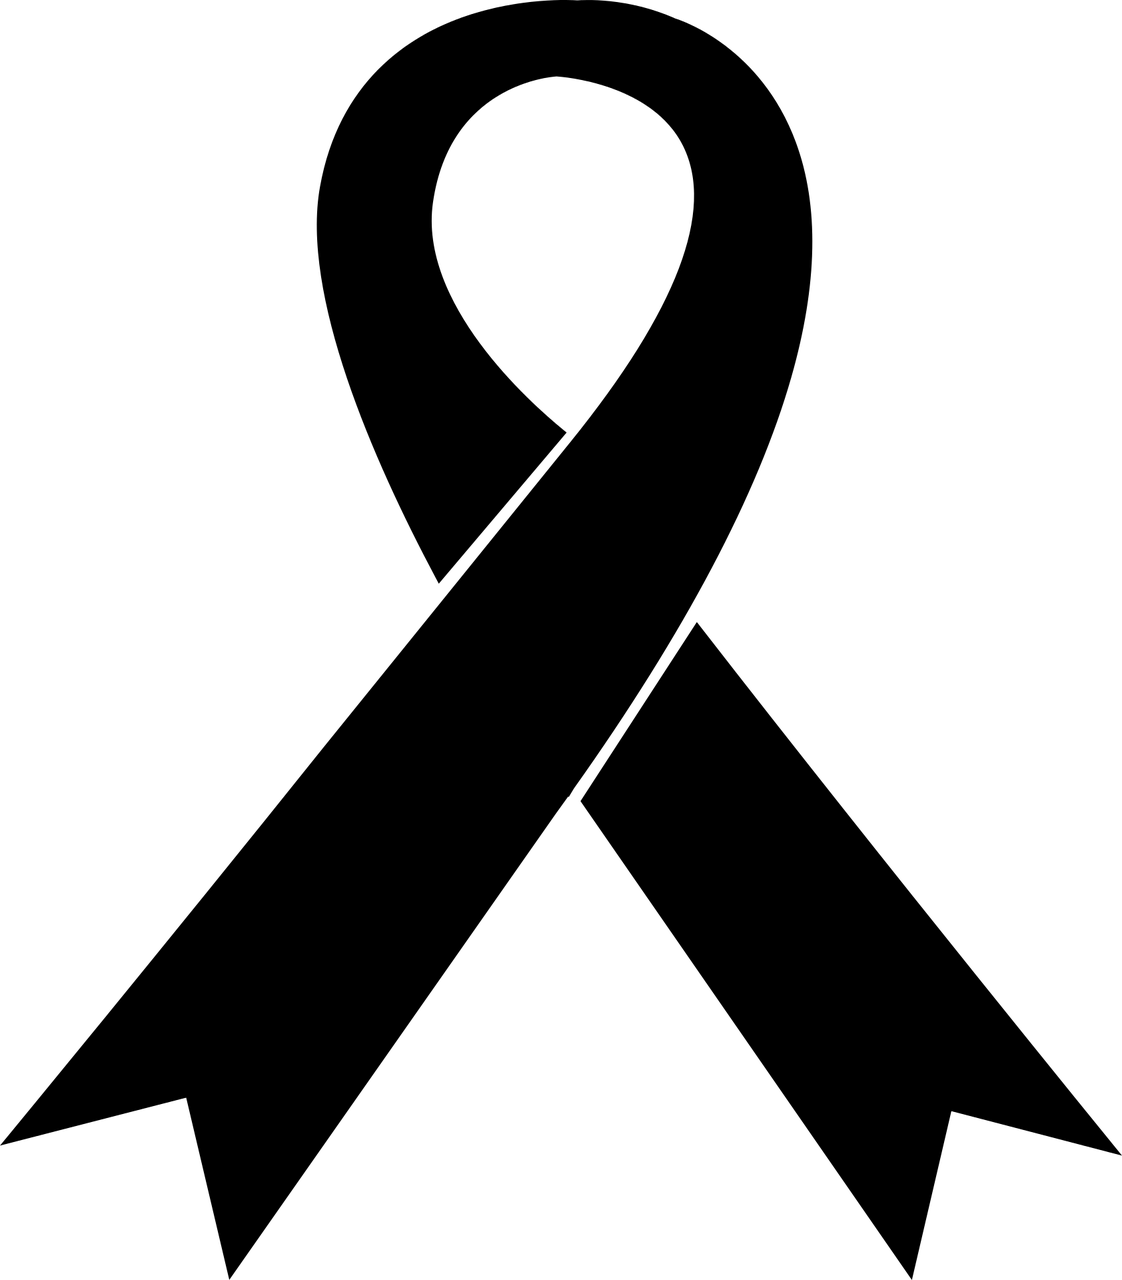 Grafika przedstwia czarną wstążkę żałobną na białym tle